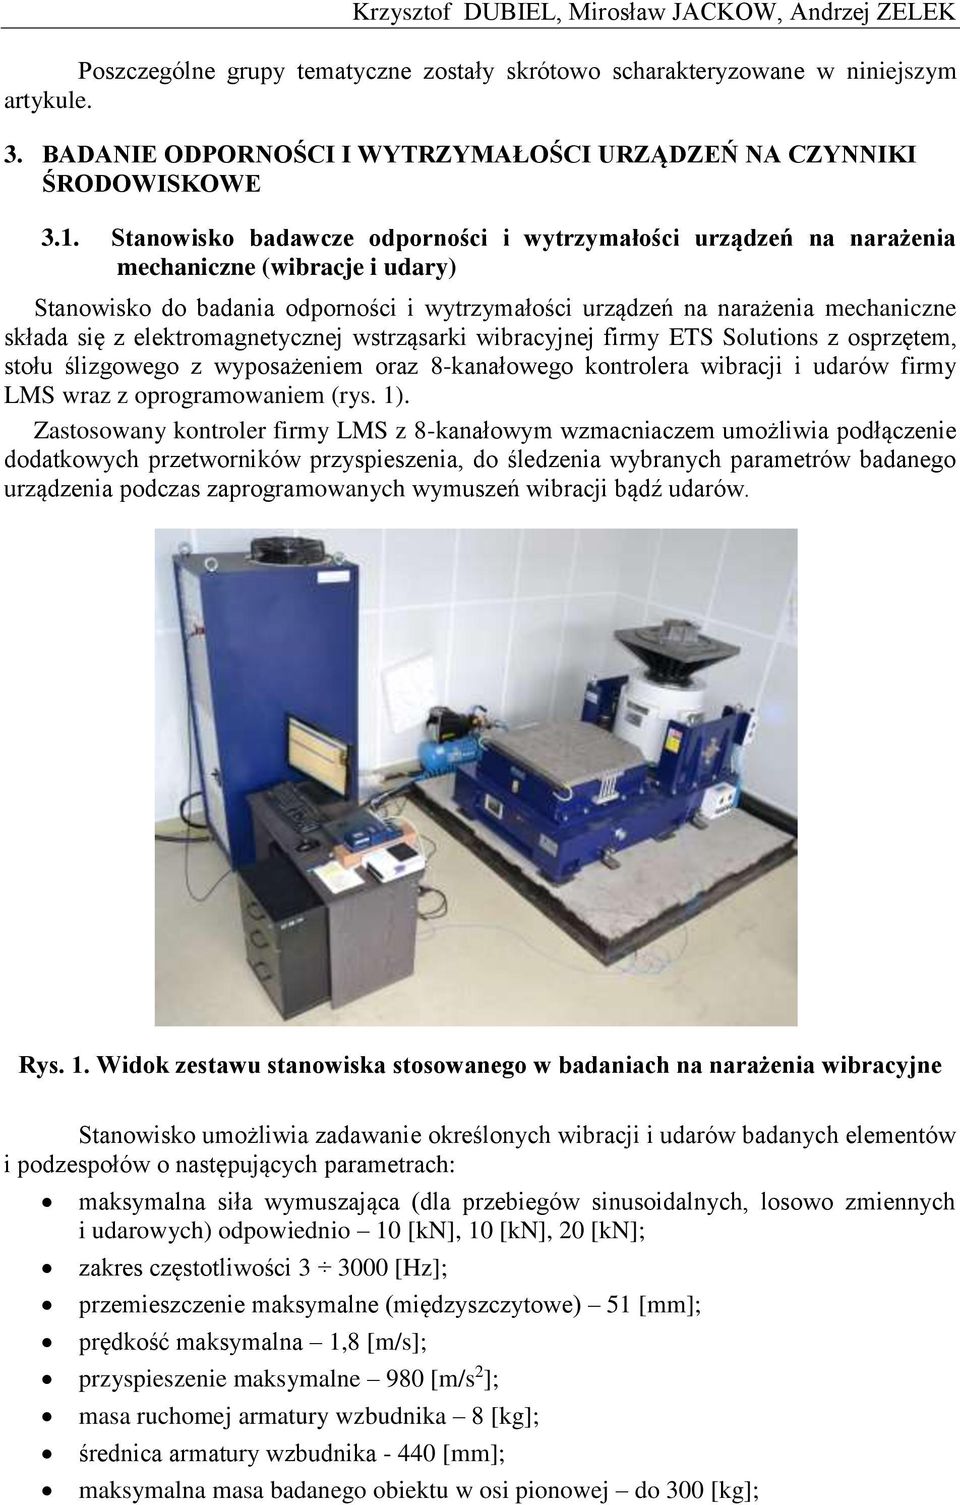 Stanowisko badawcze odporności i wytrzymałości urządzeń na narażenia mechaniczne (wibracje i udary) Stanowisko do badania odporności i wytrzymałości urządzeń na narażenia mechaniczne składa się z